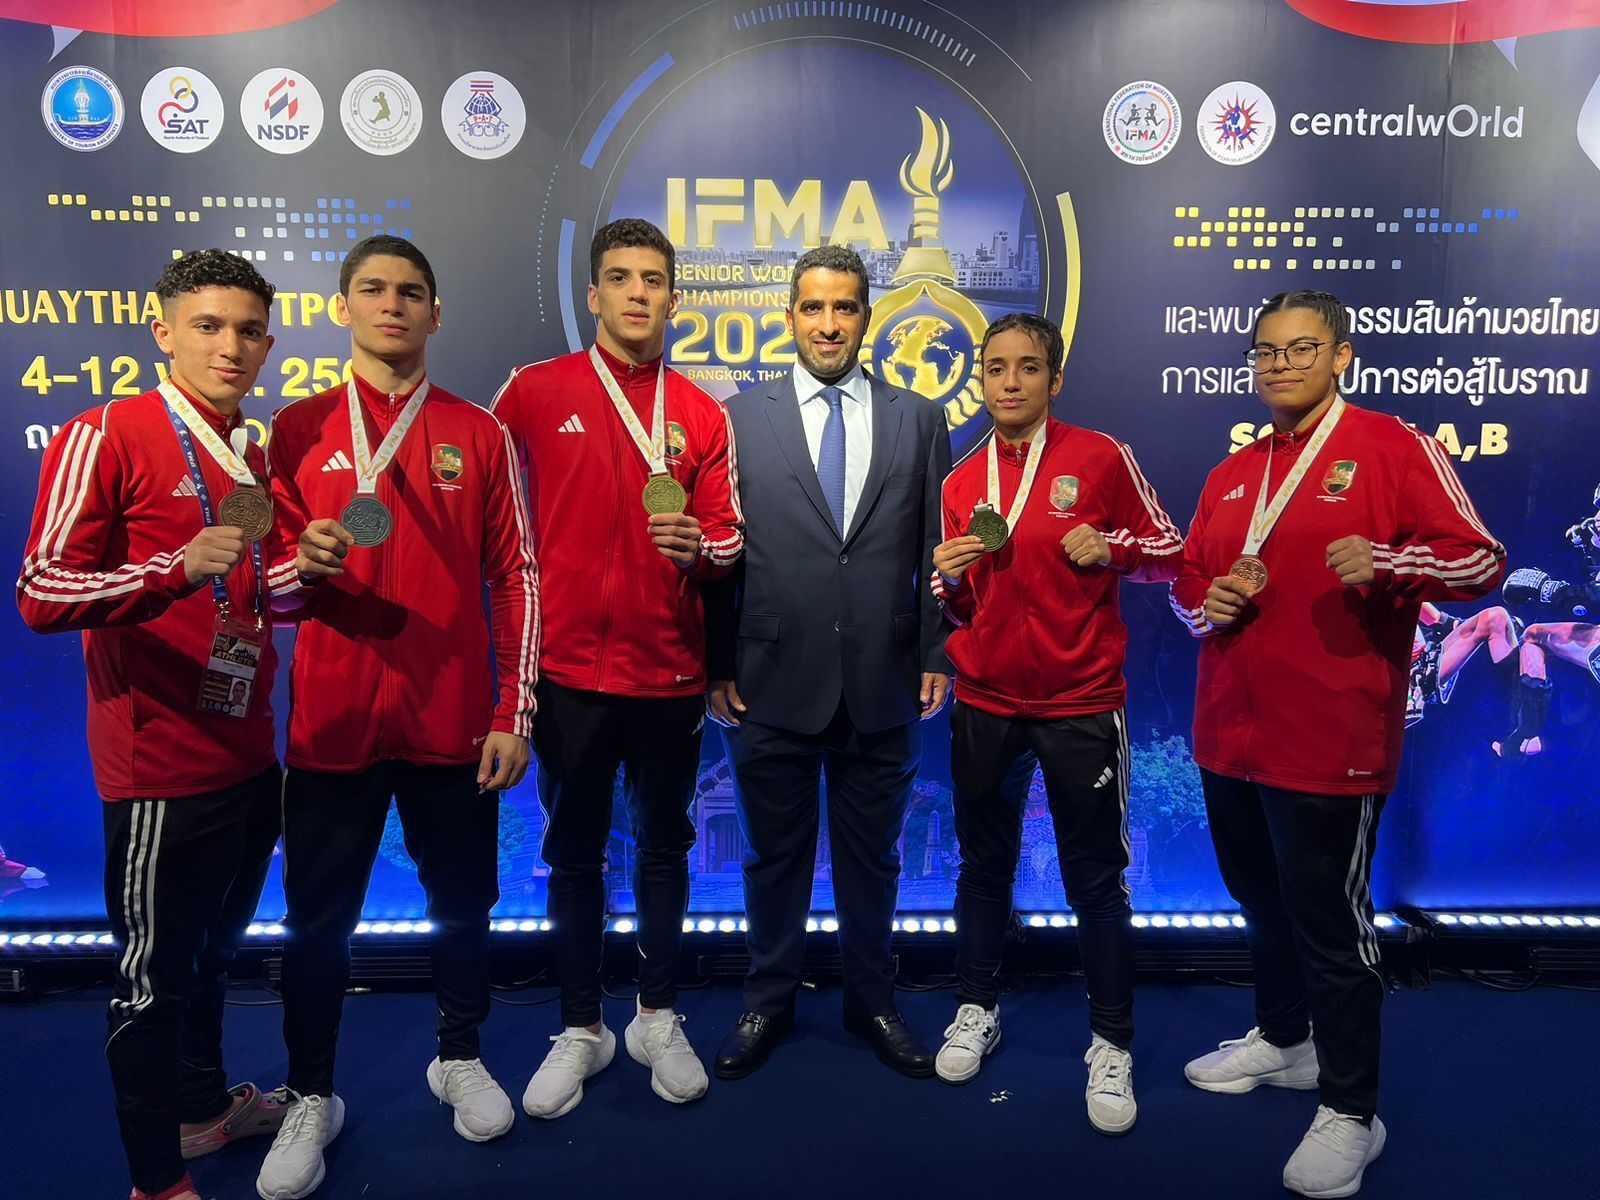 منتخب المواي تاي الإماراتي يتوّج بـ 6 ميداليات ملونة في بطولة العالم بتايلاند